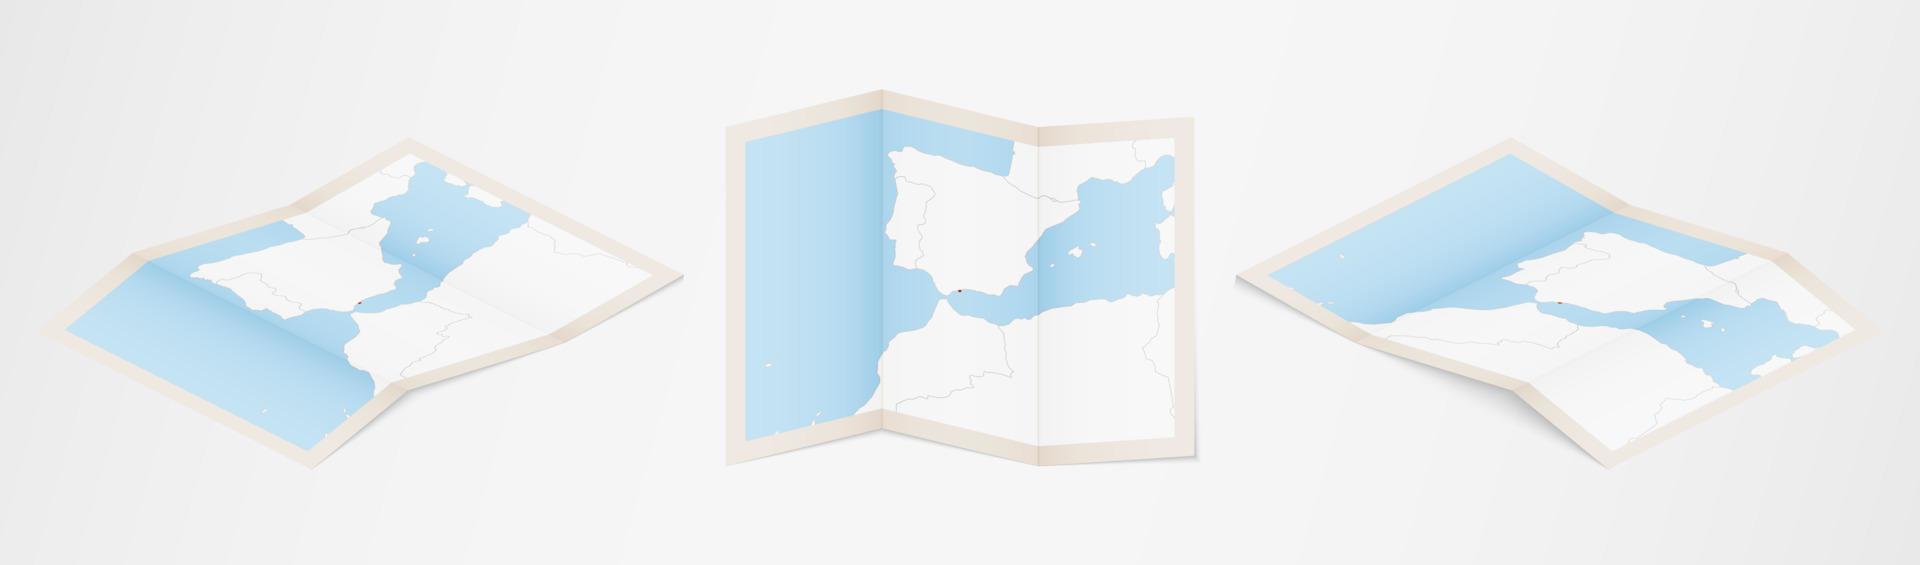 gevouwen kaart van Gibraltar in drie verschillend versies. vector